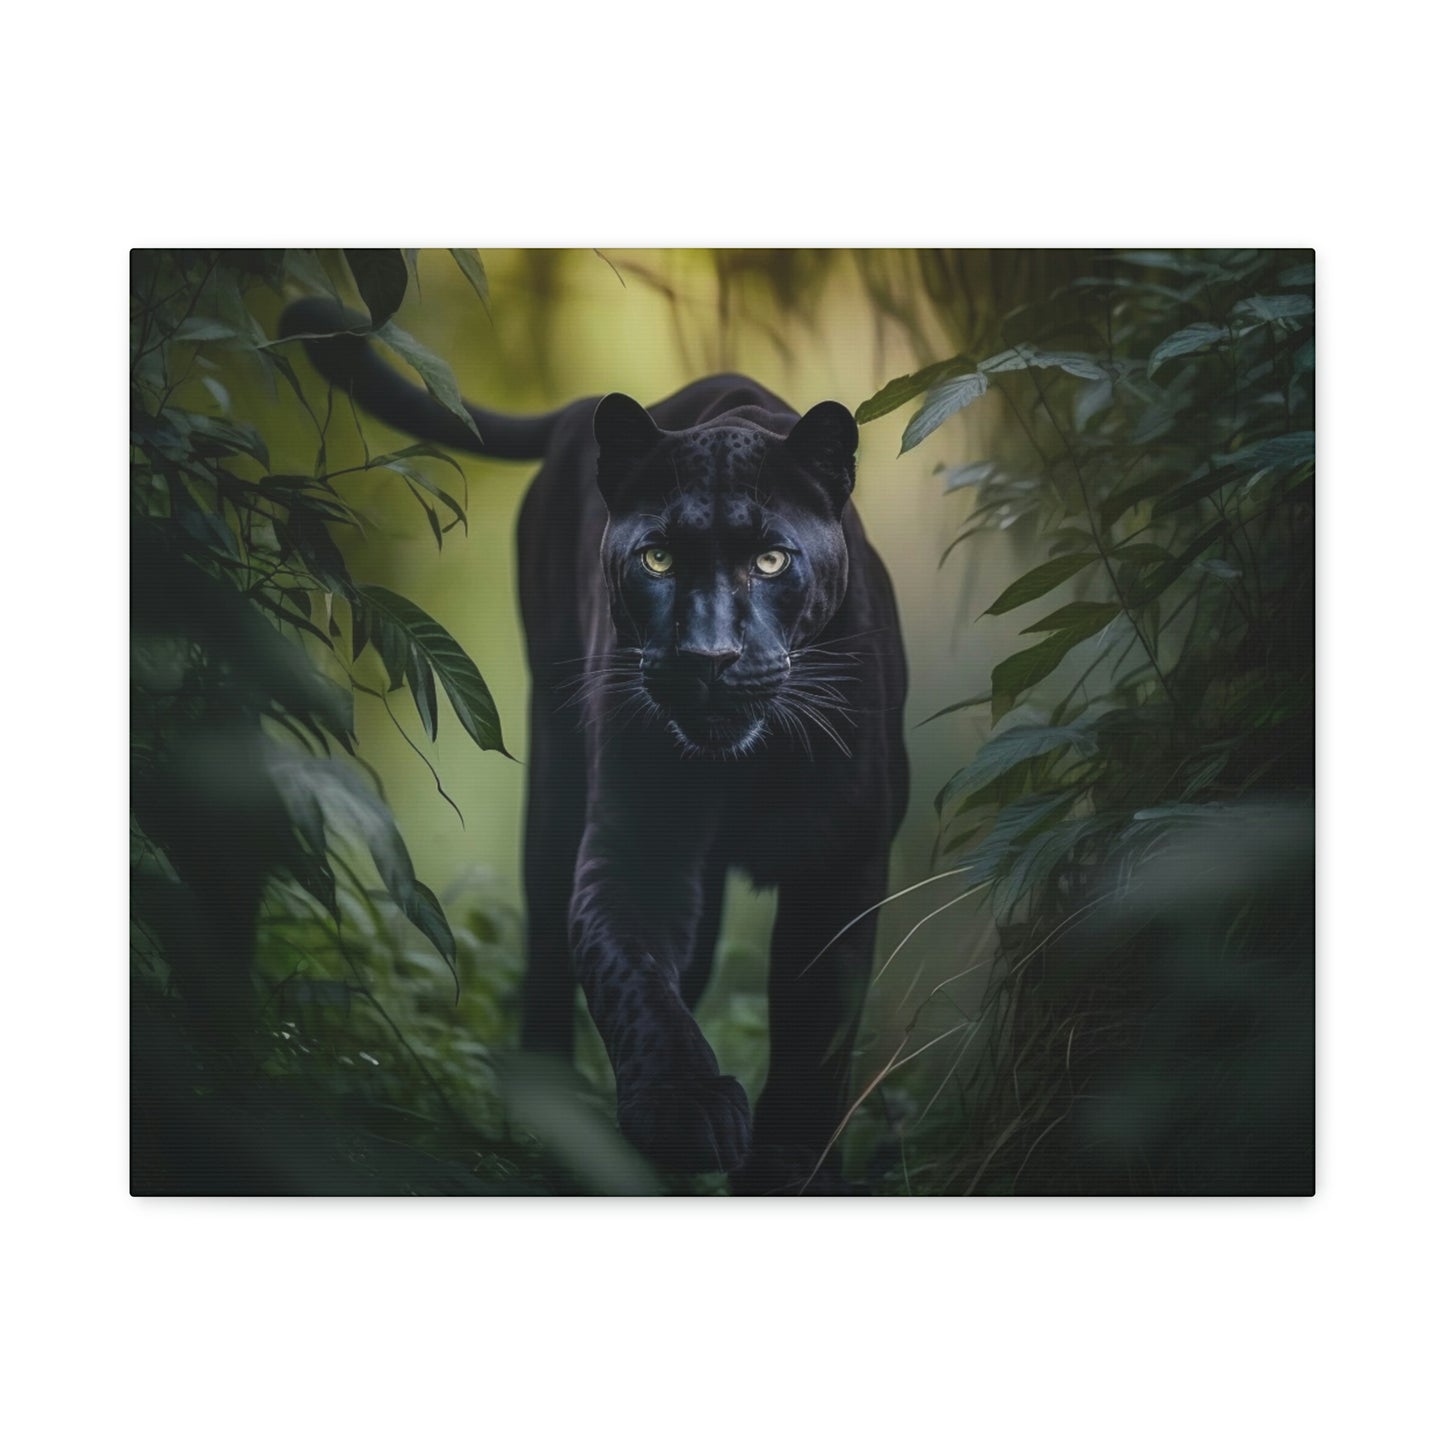 Black Panther walking